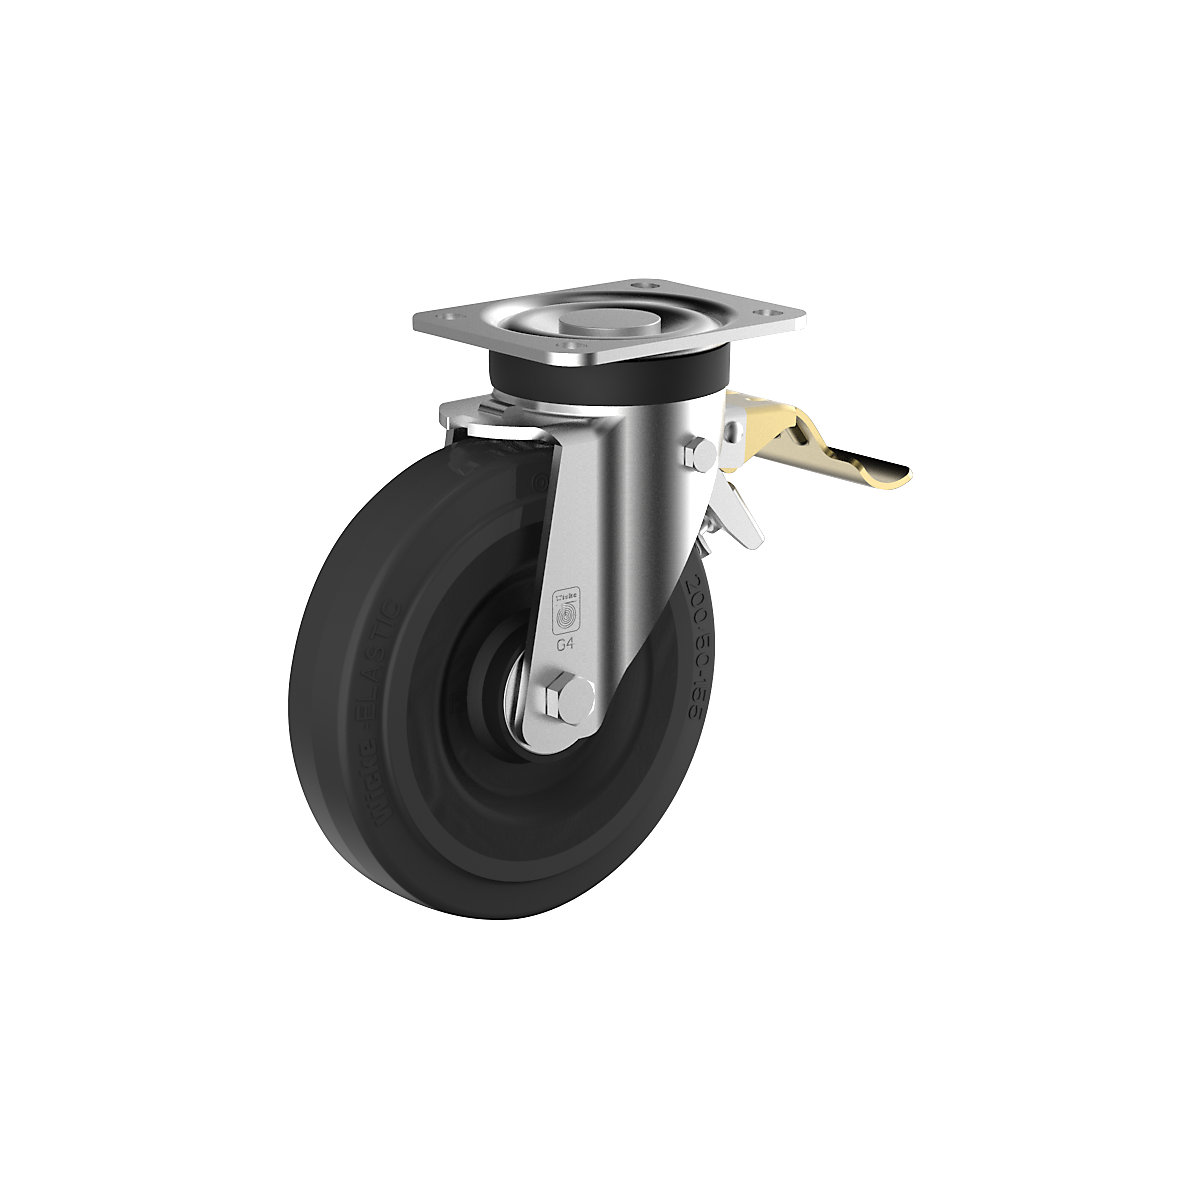 Roda de borracha maciça elástica numa jante de aço – Wicke, Ø da roda x largura 250 x 60 mm, roda orientável com bloqueio duplo-2